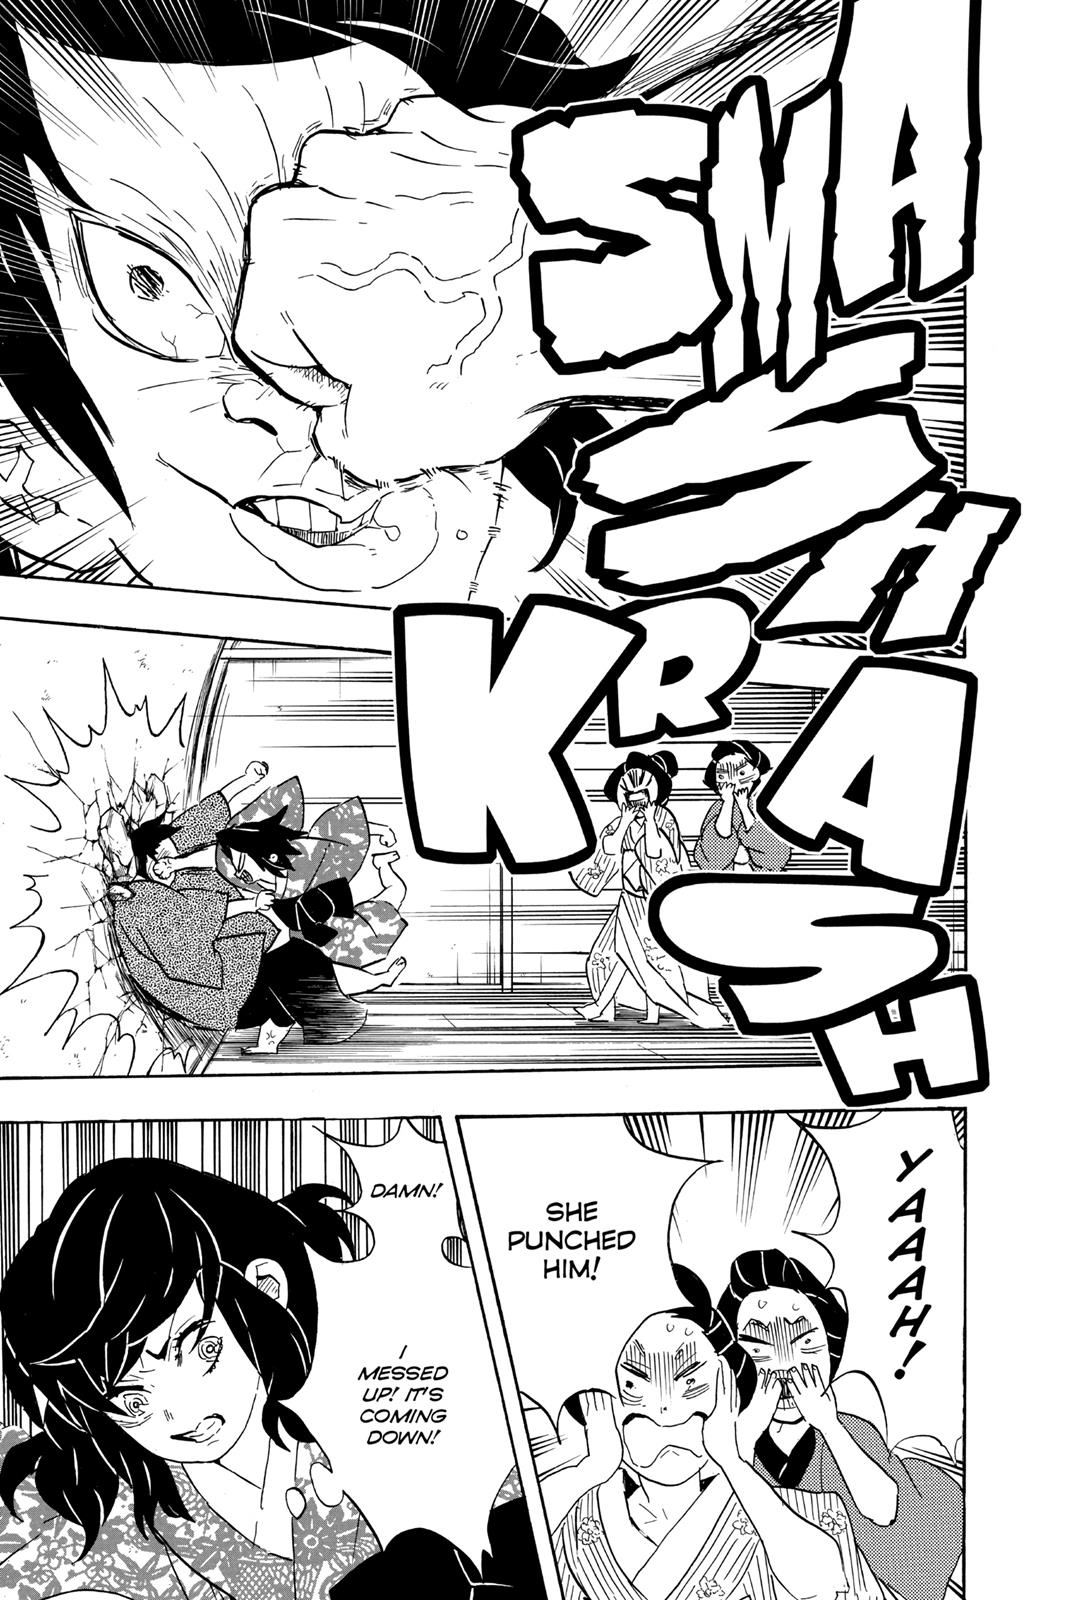 Demon Slayer Manga Manga Chapter - 73 - image 8